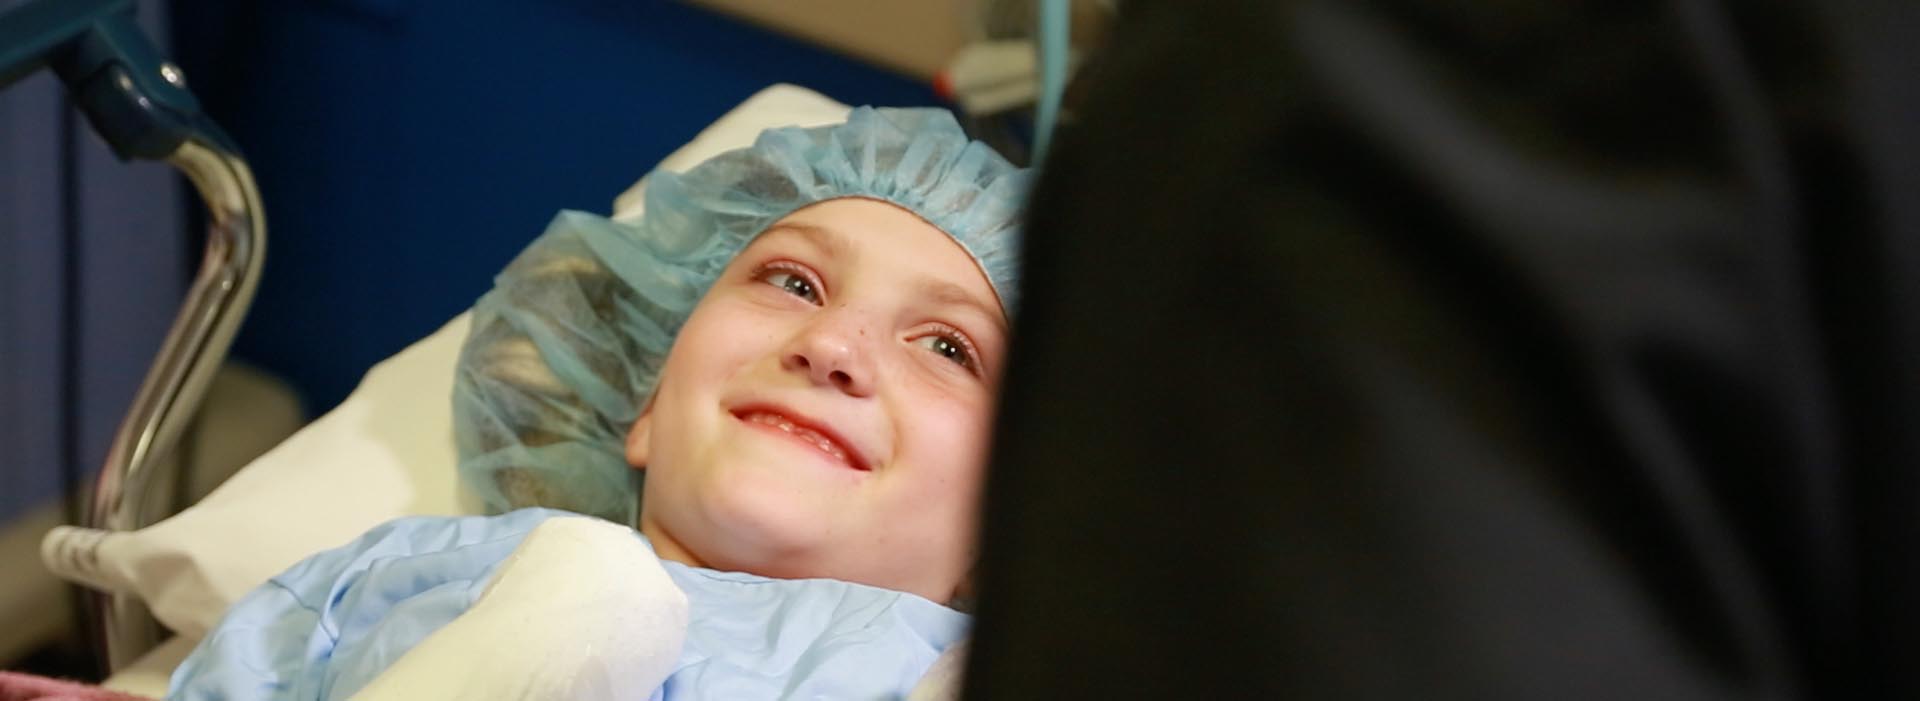 Երիտասարդ երեխա հիվանդը ժպտում է ինչ-որ մեկին կադրից դուրս